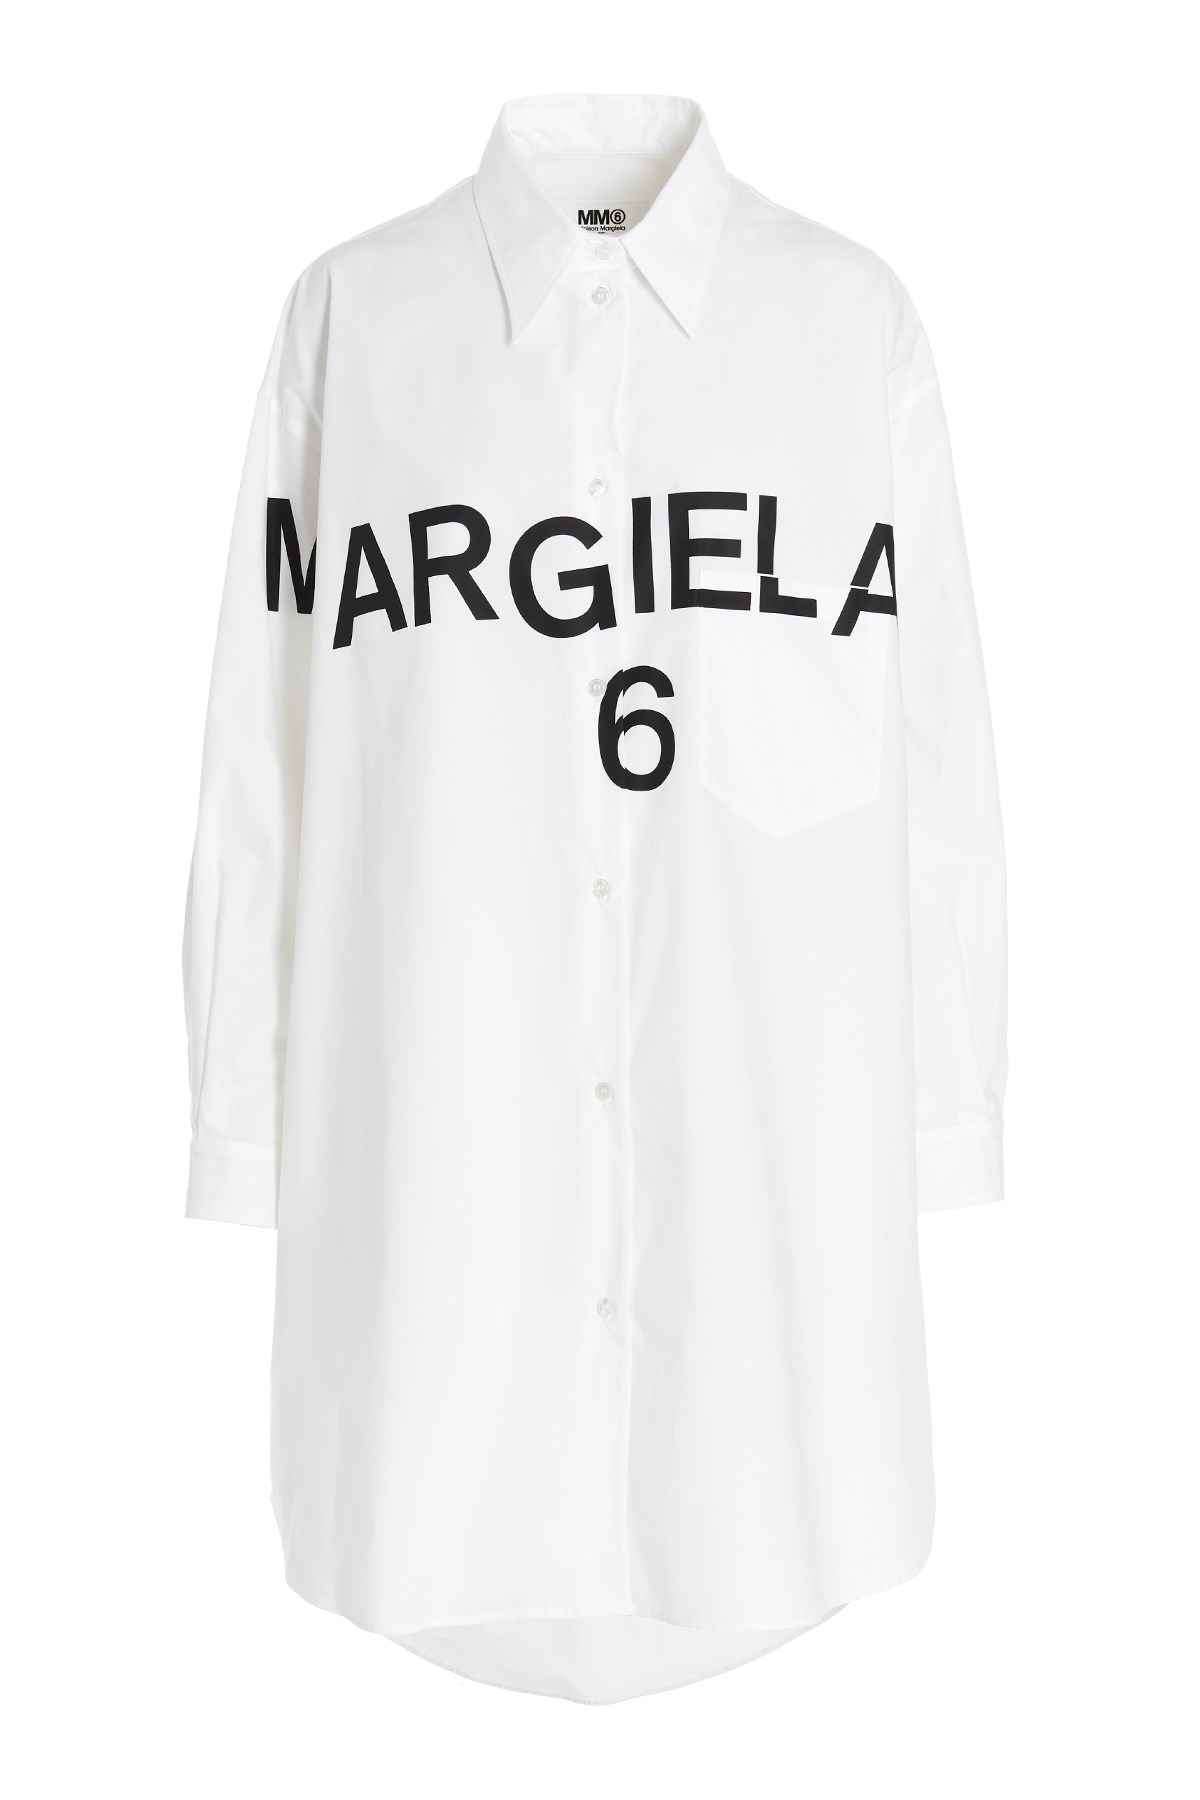 MM6 MAISON MARGIELA Hemd Mit Logo Vorne